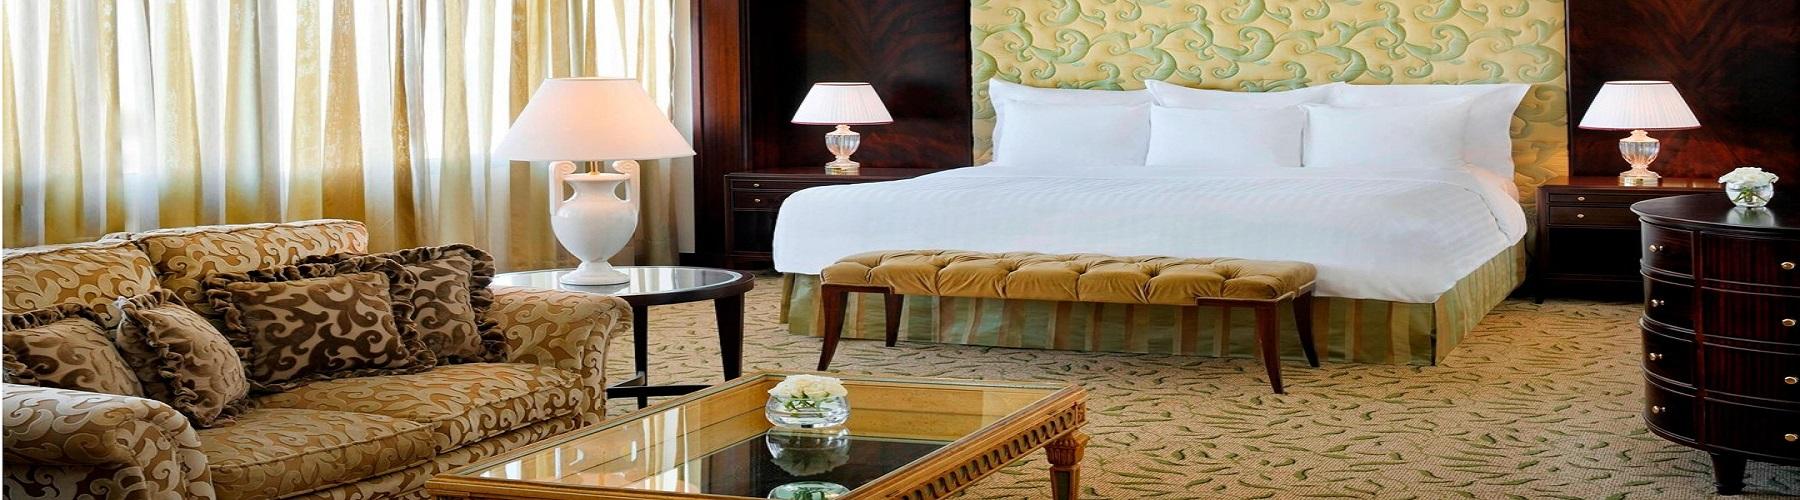 Забронировать отель в Аммане Amman Marriott Hotel